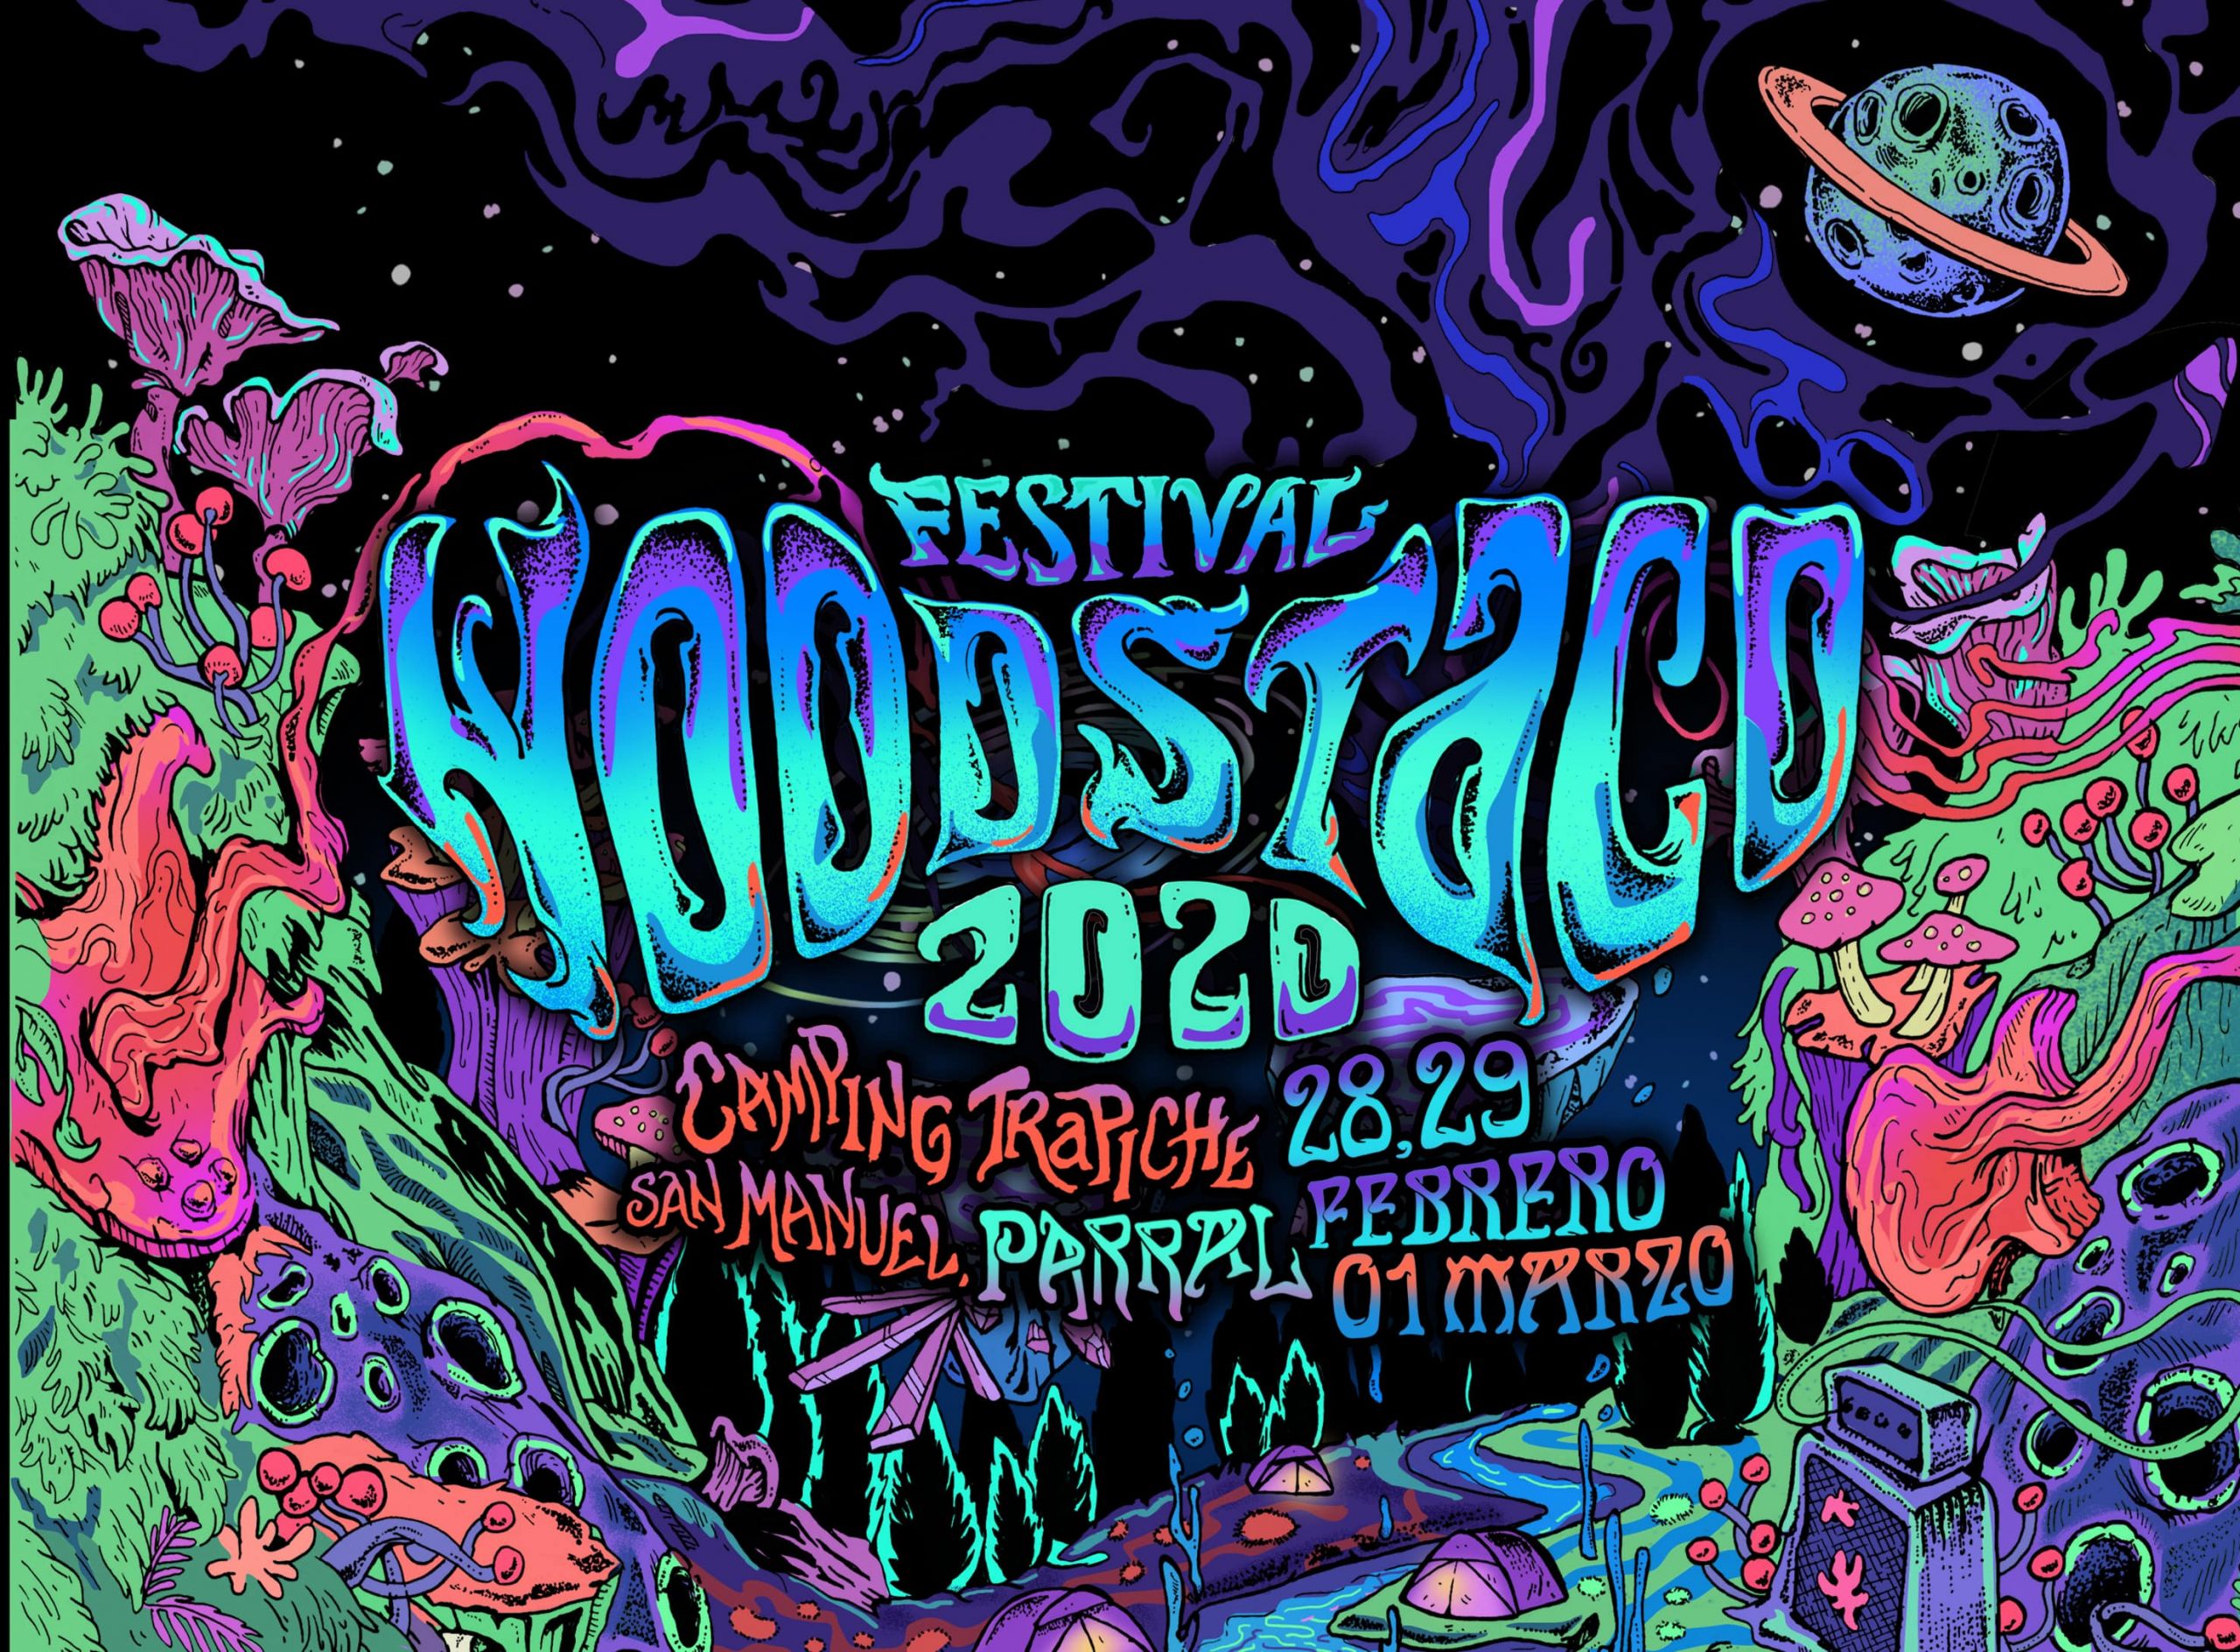 Festival Woodstaco se reagenda para el 28, 29 de febrero y 1 de marzo de 2020